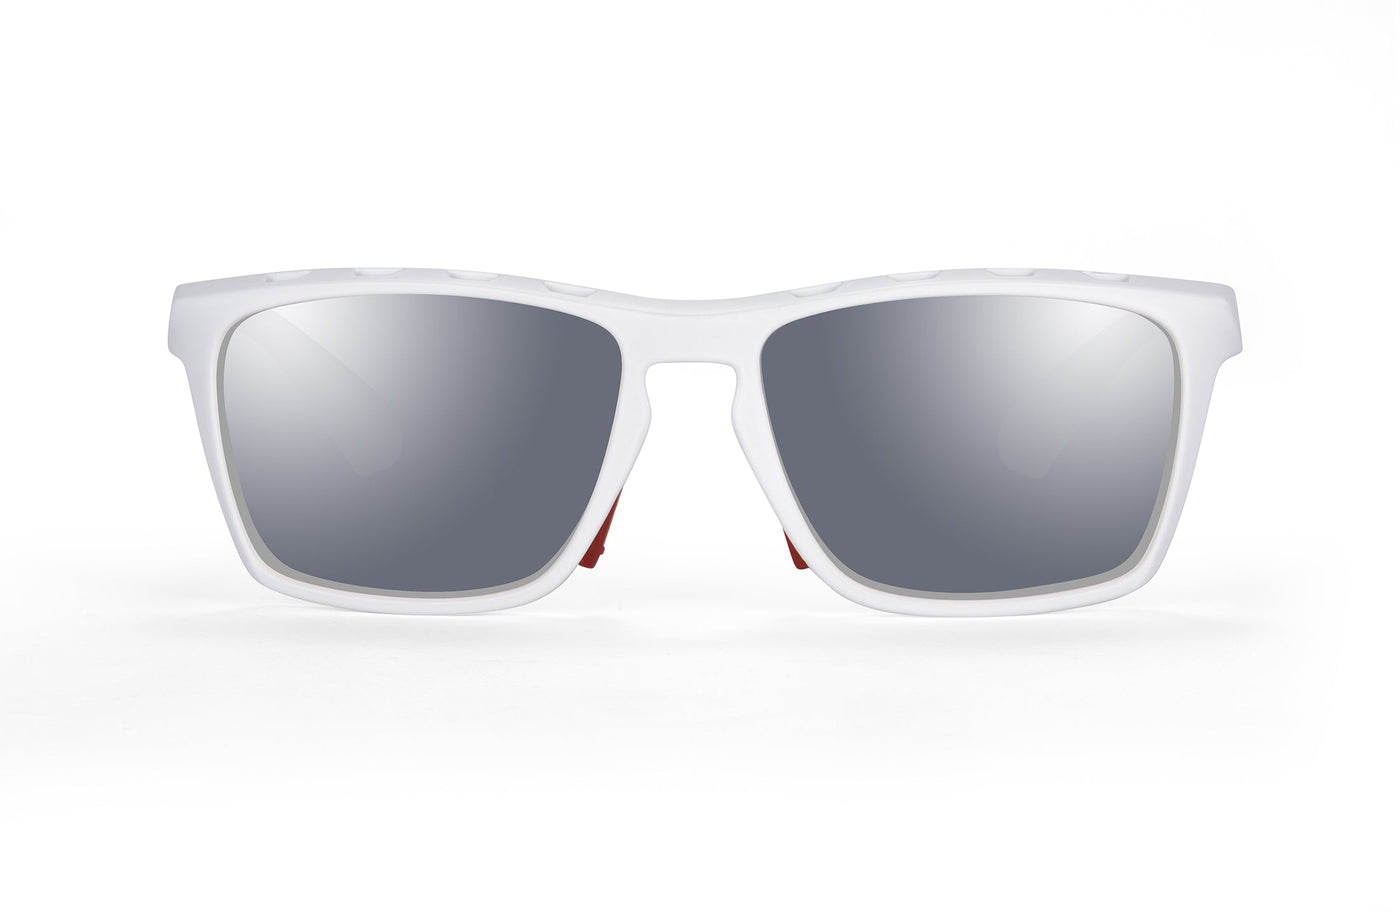 FORTIS - Polarised Silver Mirrored Prescription Sports Glasses